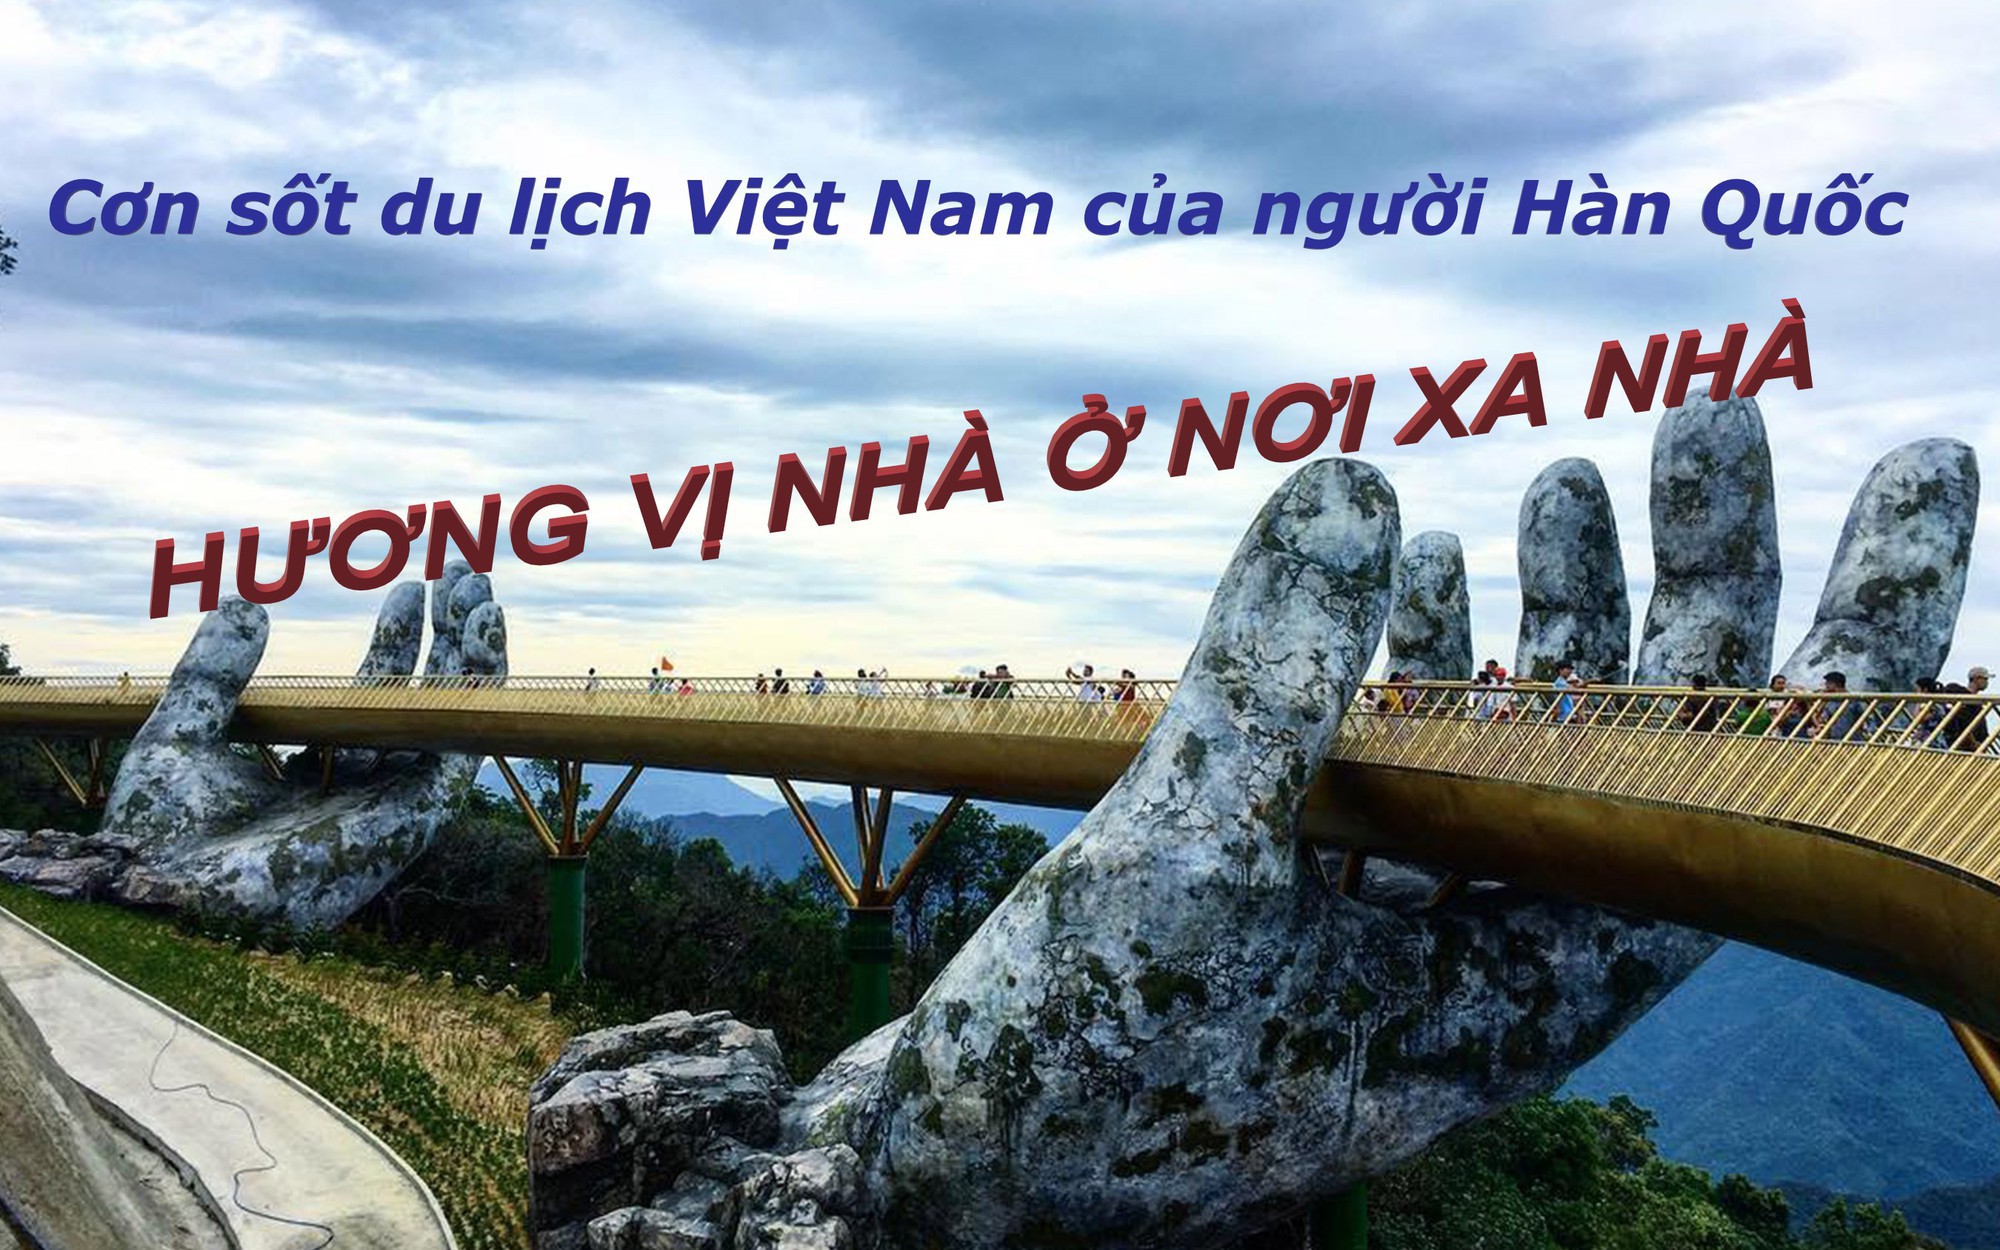 Báo quốc tế giải mã cơn sốt du lịch Việt Nam của người dân Hàn Quốc